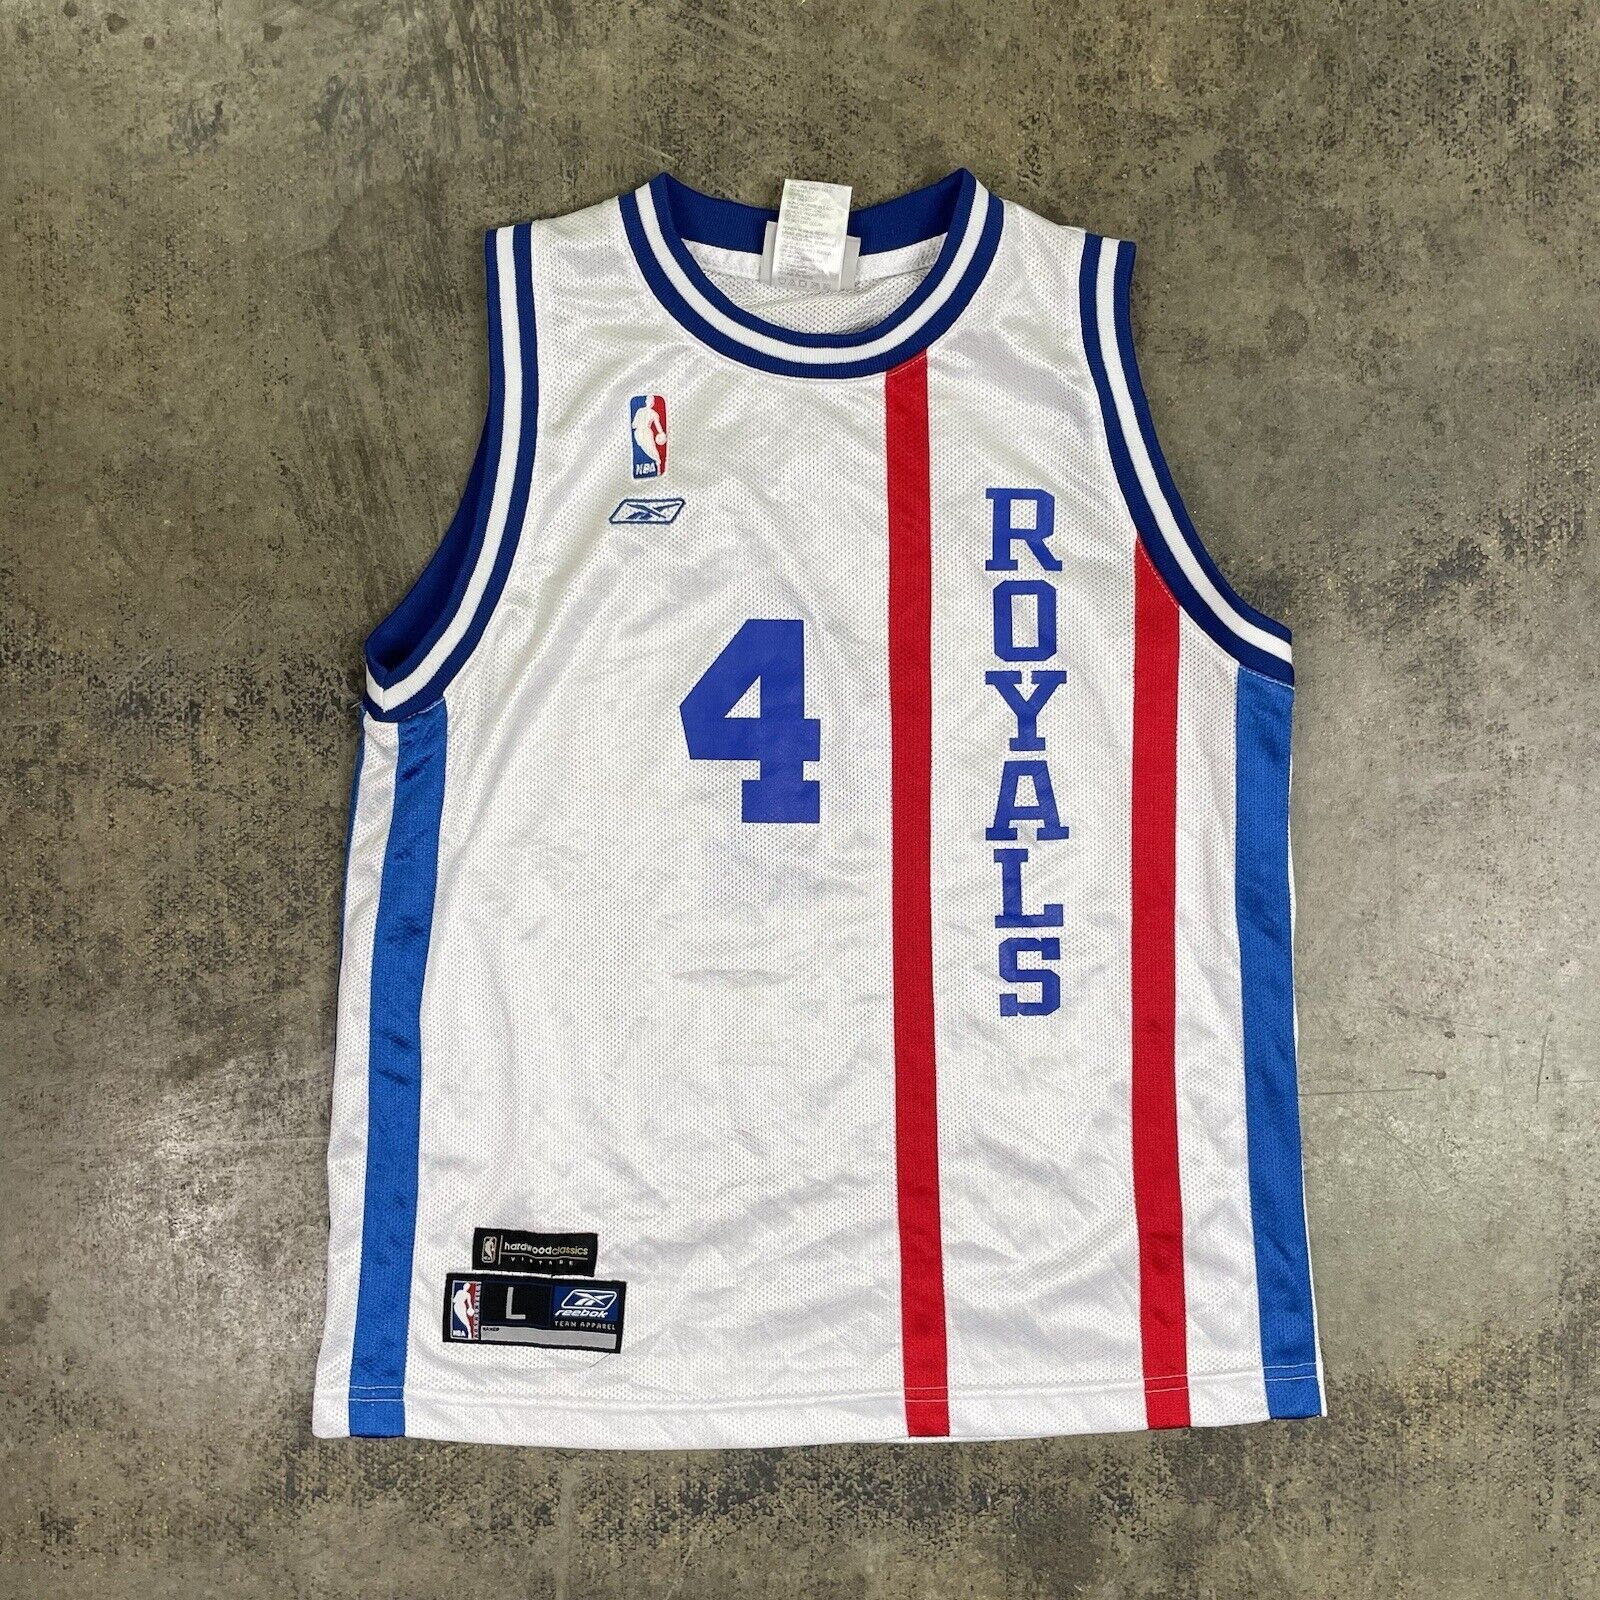 Drazen Petrovic #3 New Jersey Nets Mitchell & Ness 1992-93 White Jersey  Size 56